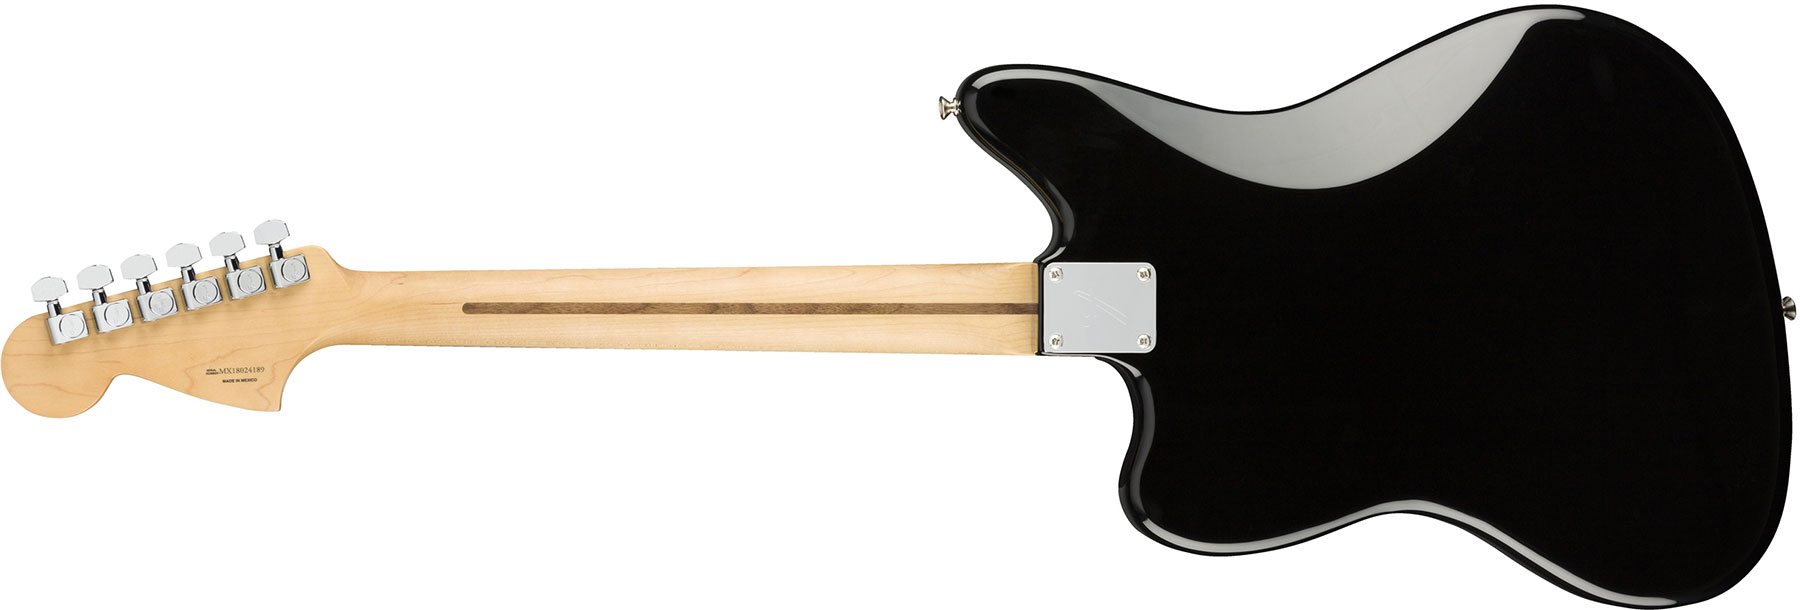 Fender Jaguar Player Mex Hs Pf - Black - Guitare Électrique RÉtro Rock - Variation 1